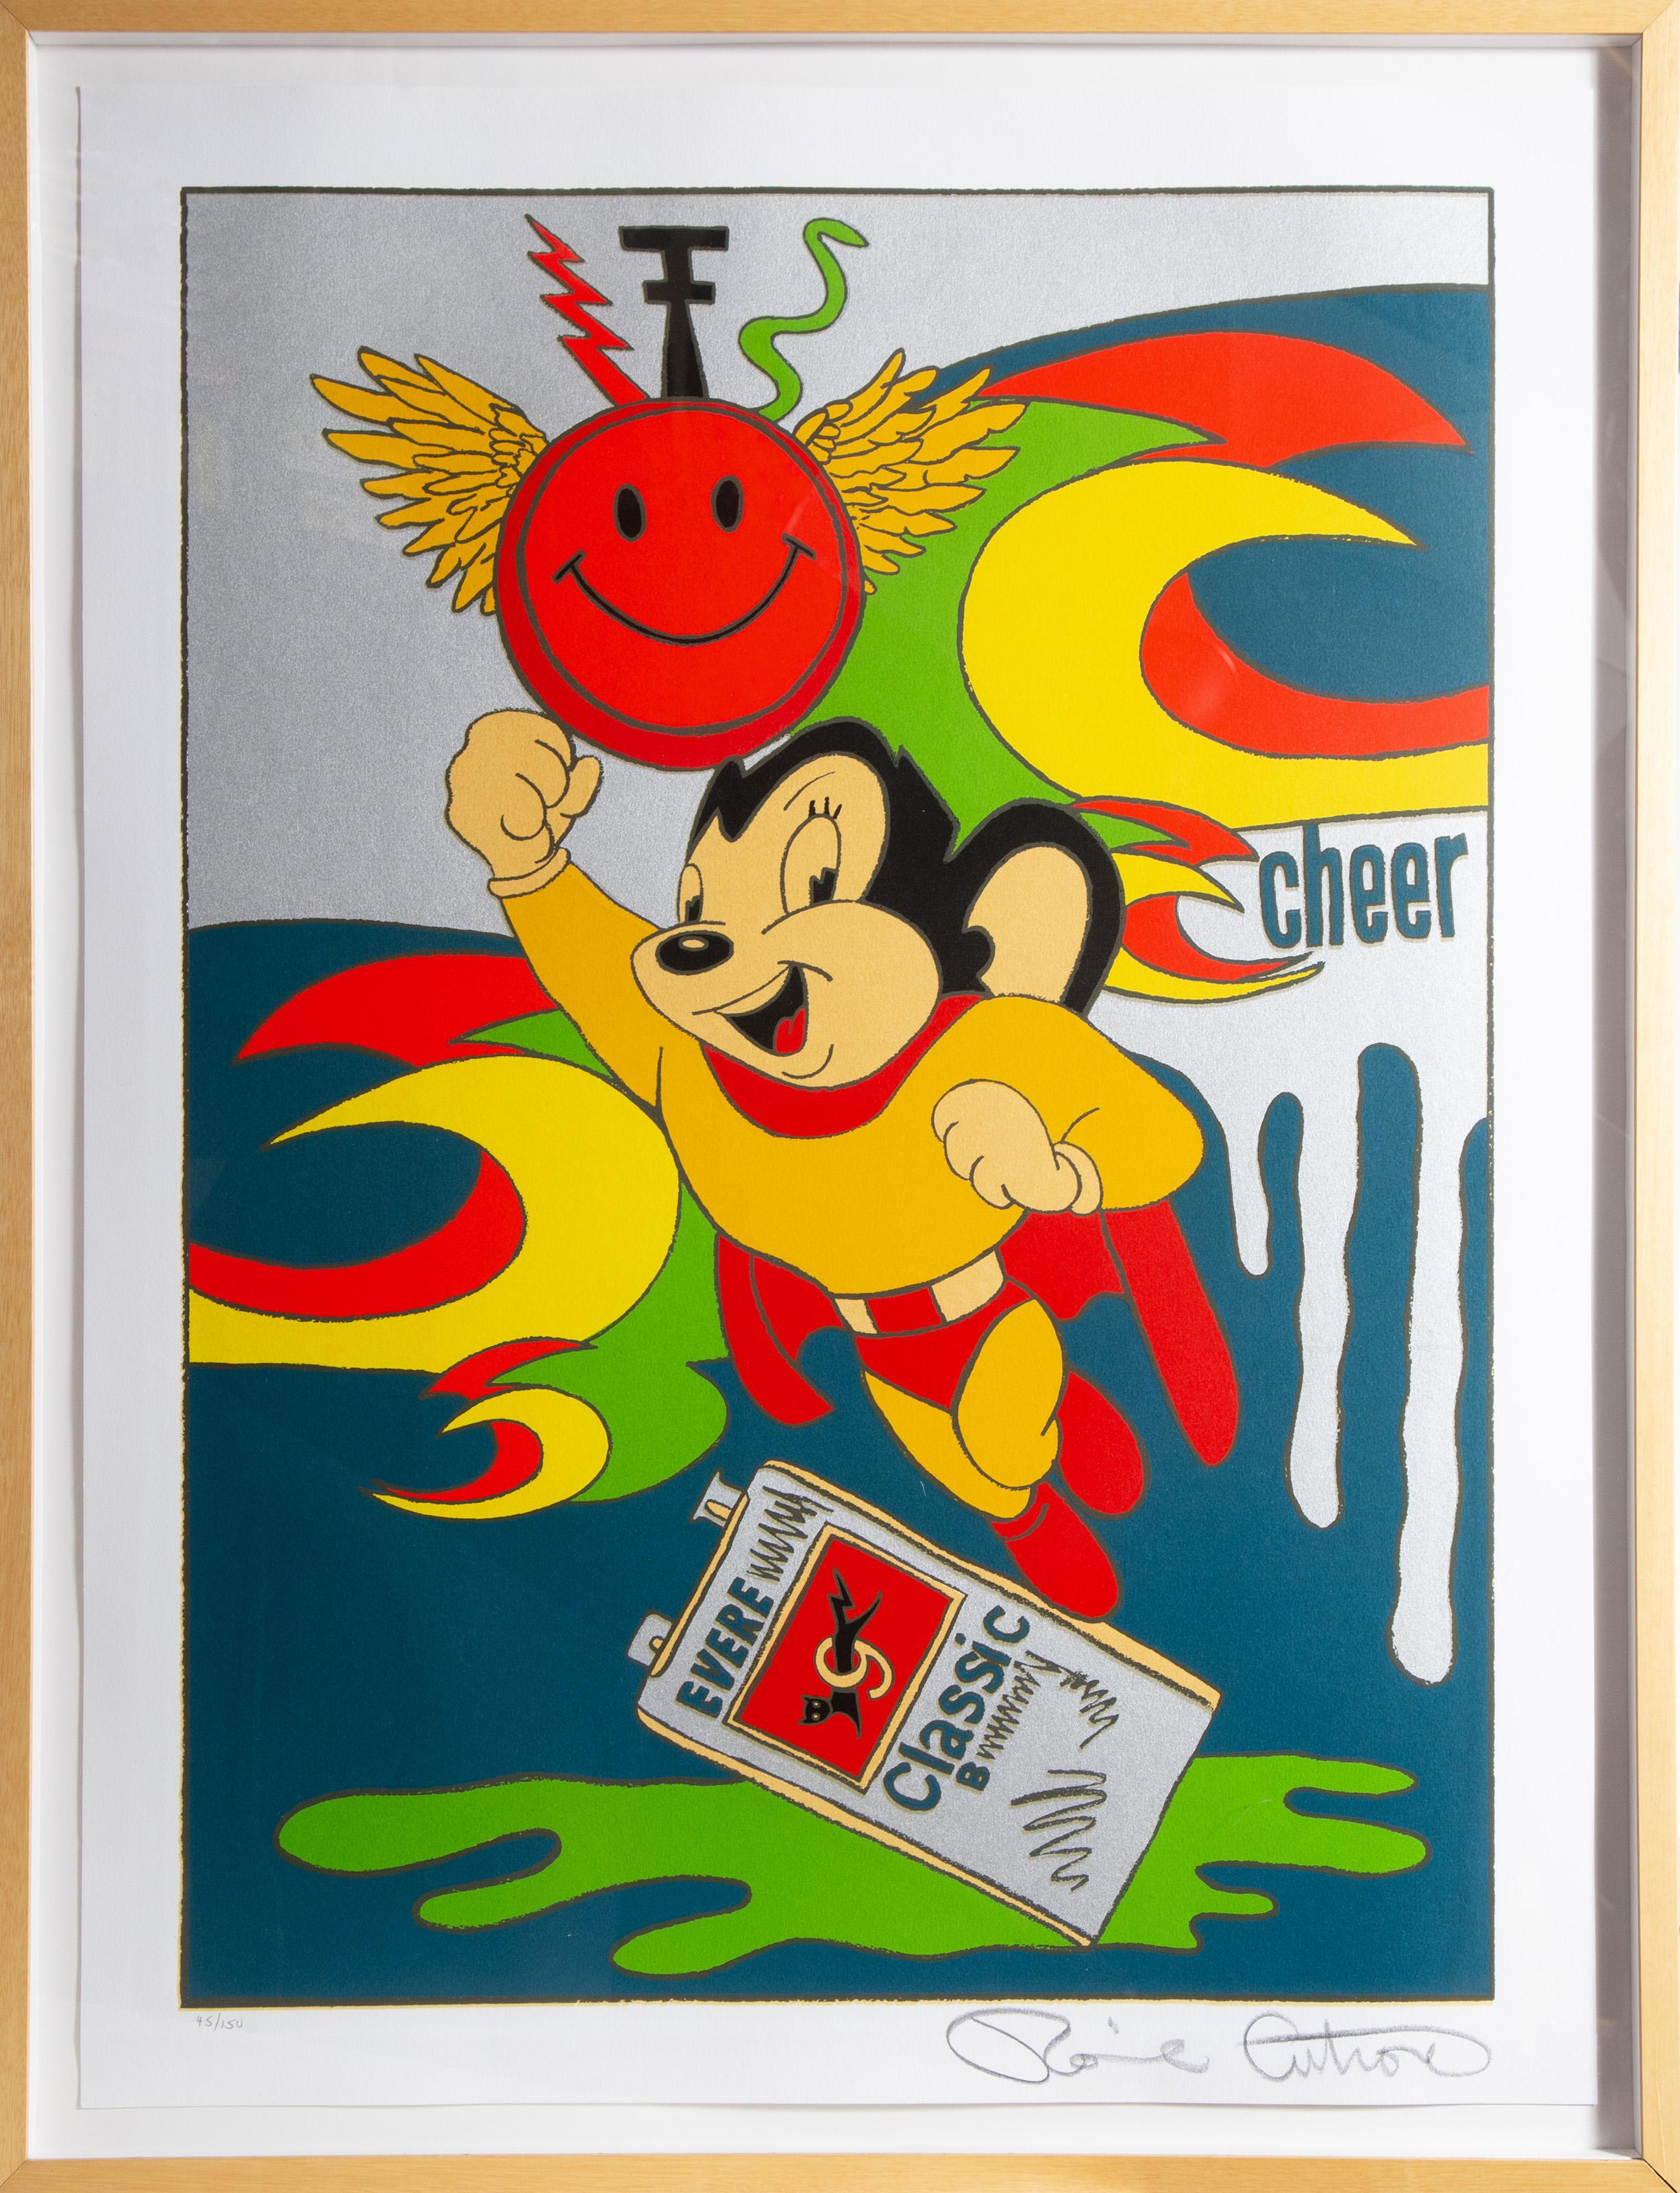 Mächtige Maus
Ronnie Cutrone, Amerikaner (1948-2013)
Siebdruck, signiert und nummeriert mit Bleistift
Auflage von 45/150
Bildgröße: 36 x 26 Zoll
Größe: 40 x 30 Zoll (101,6 x 76,2 cm)
Rahmengröße: 43,5 x 33,5 Zoll